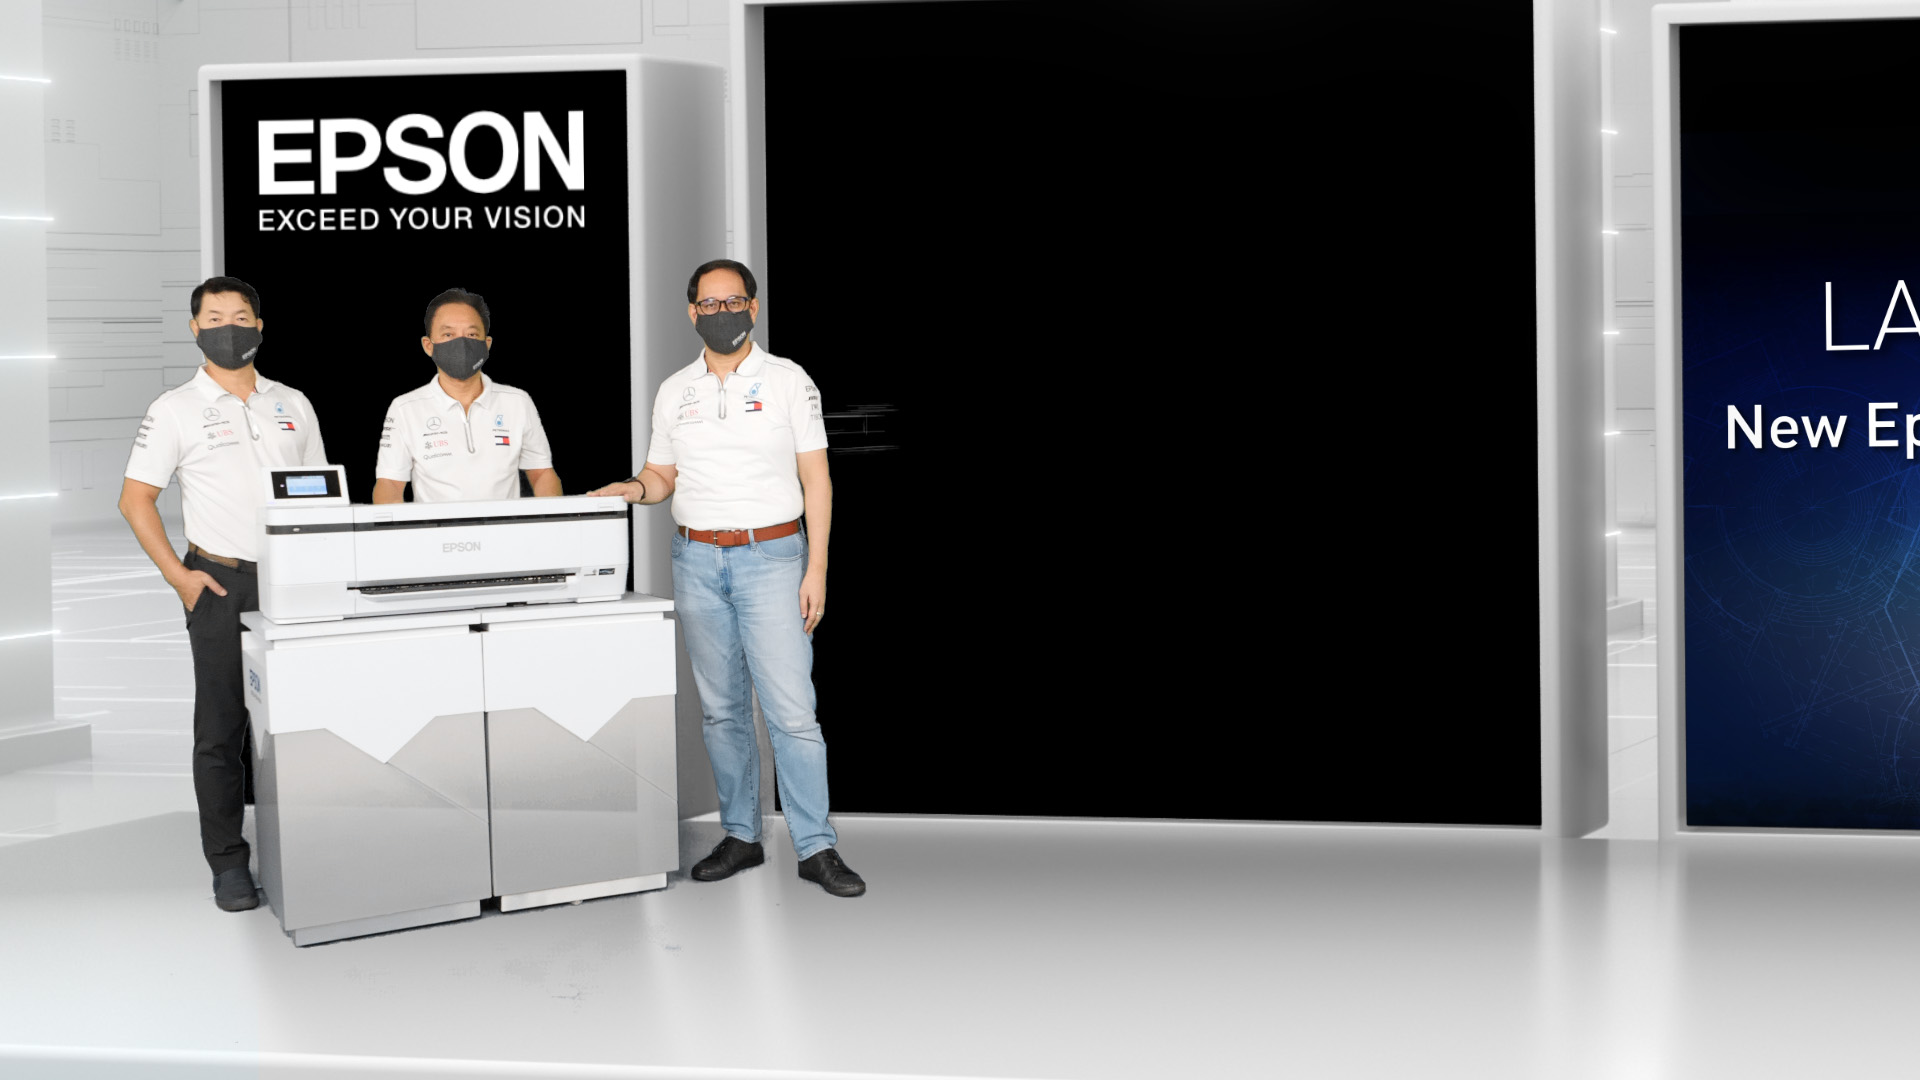 Epson ส่งเครื่องพิมพ์อเนกประสงค์ SureColor T-Series รุ่นใหม่ รุกตลาด หลังงานพิมพ์อินเฮาส์ส่งสัญญาณโต